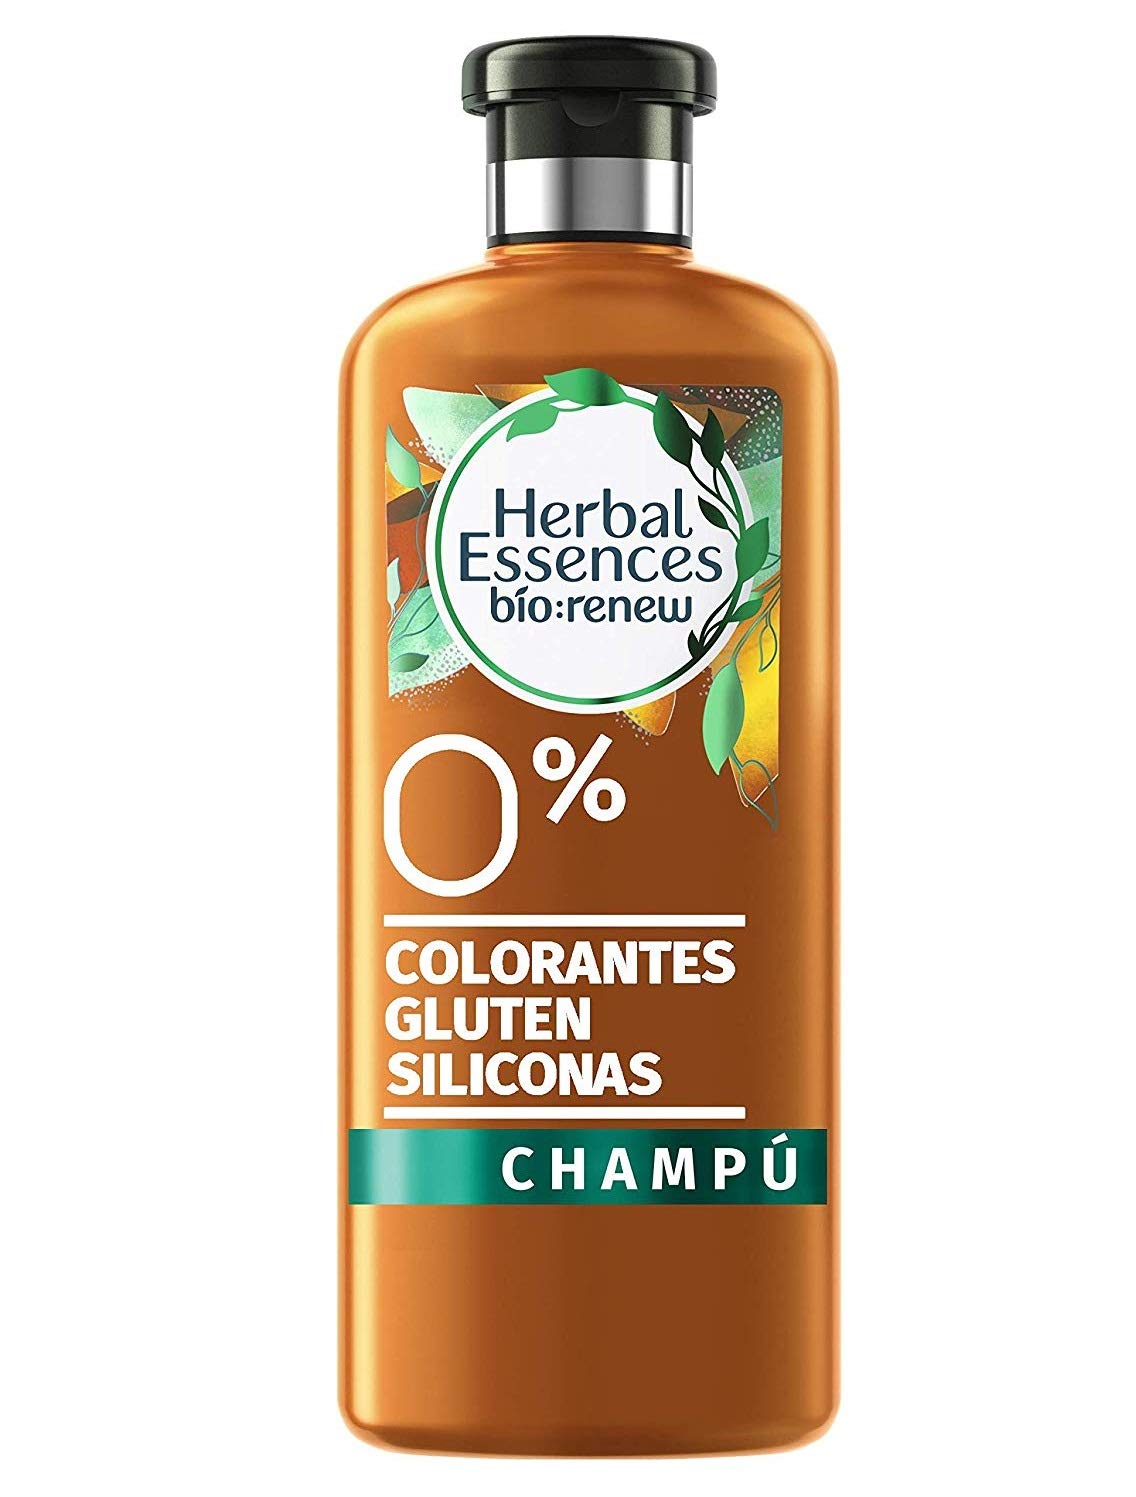 Pack de 6 Champú Herbal Essences Bío Renew solo 11,4€